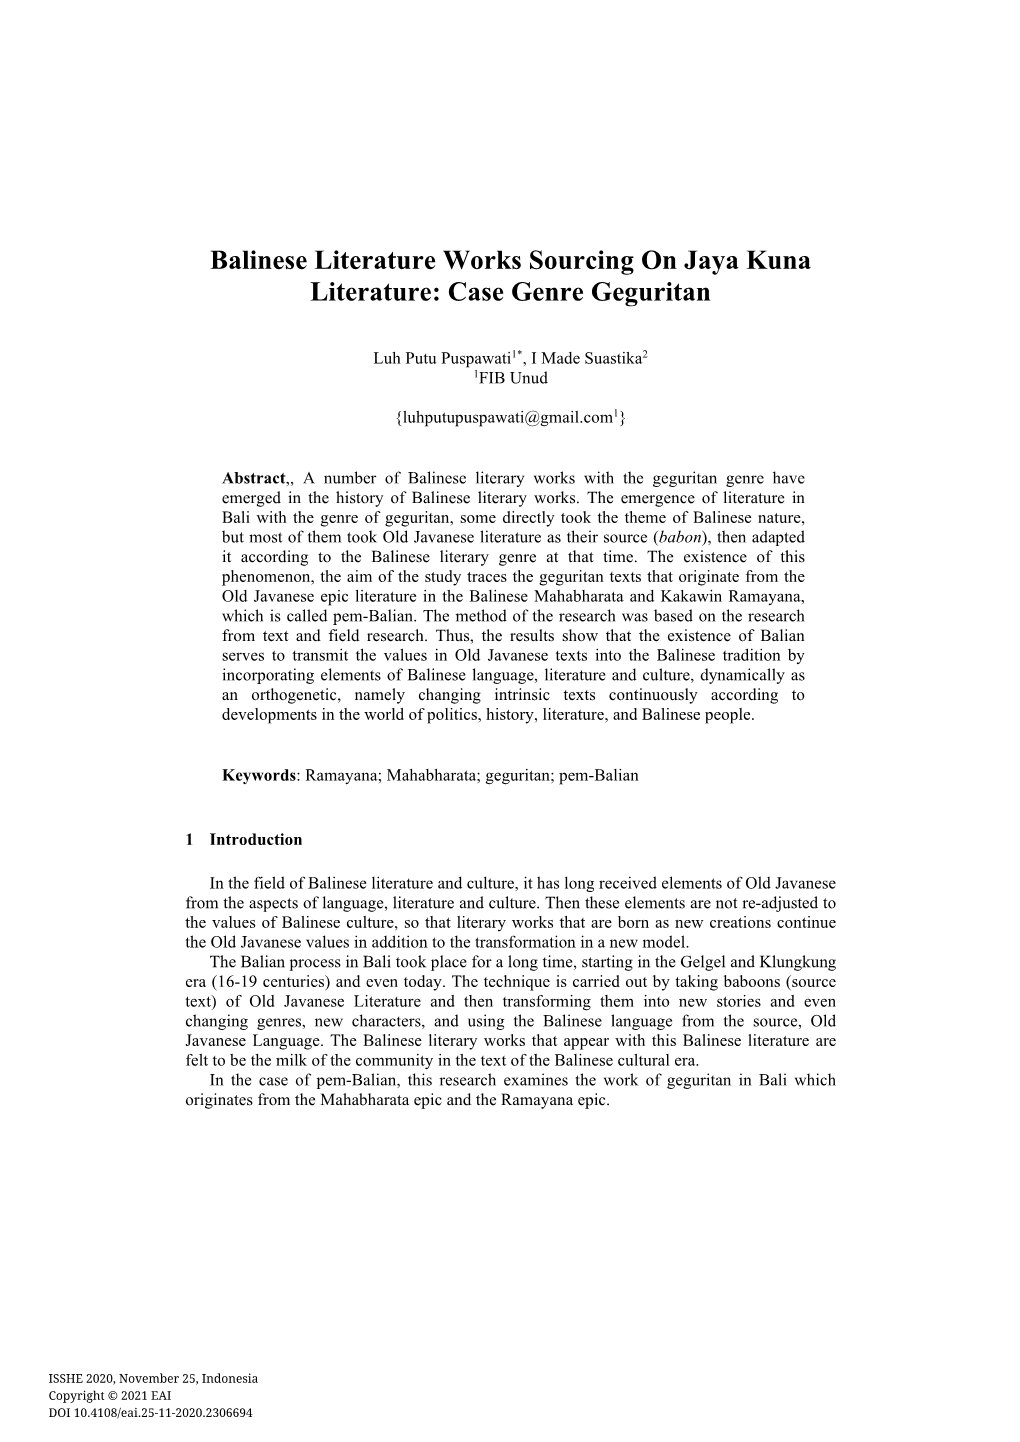 Balinese Literature Works Sourcing on Jaya Kuna Literature: Case Genre Geguritan